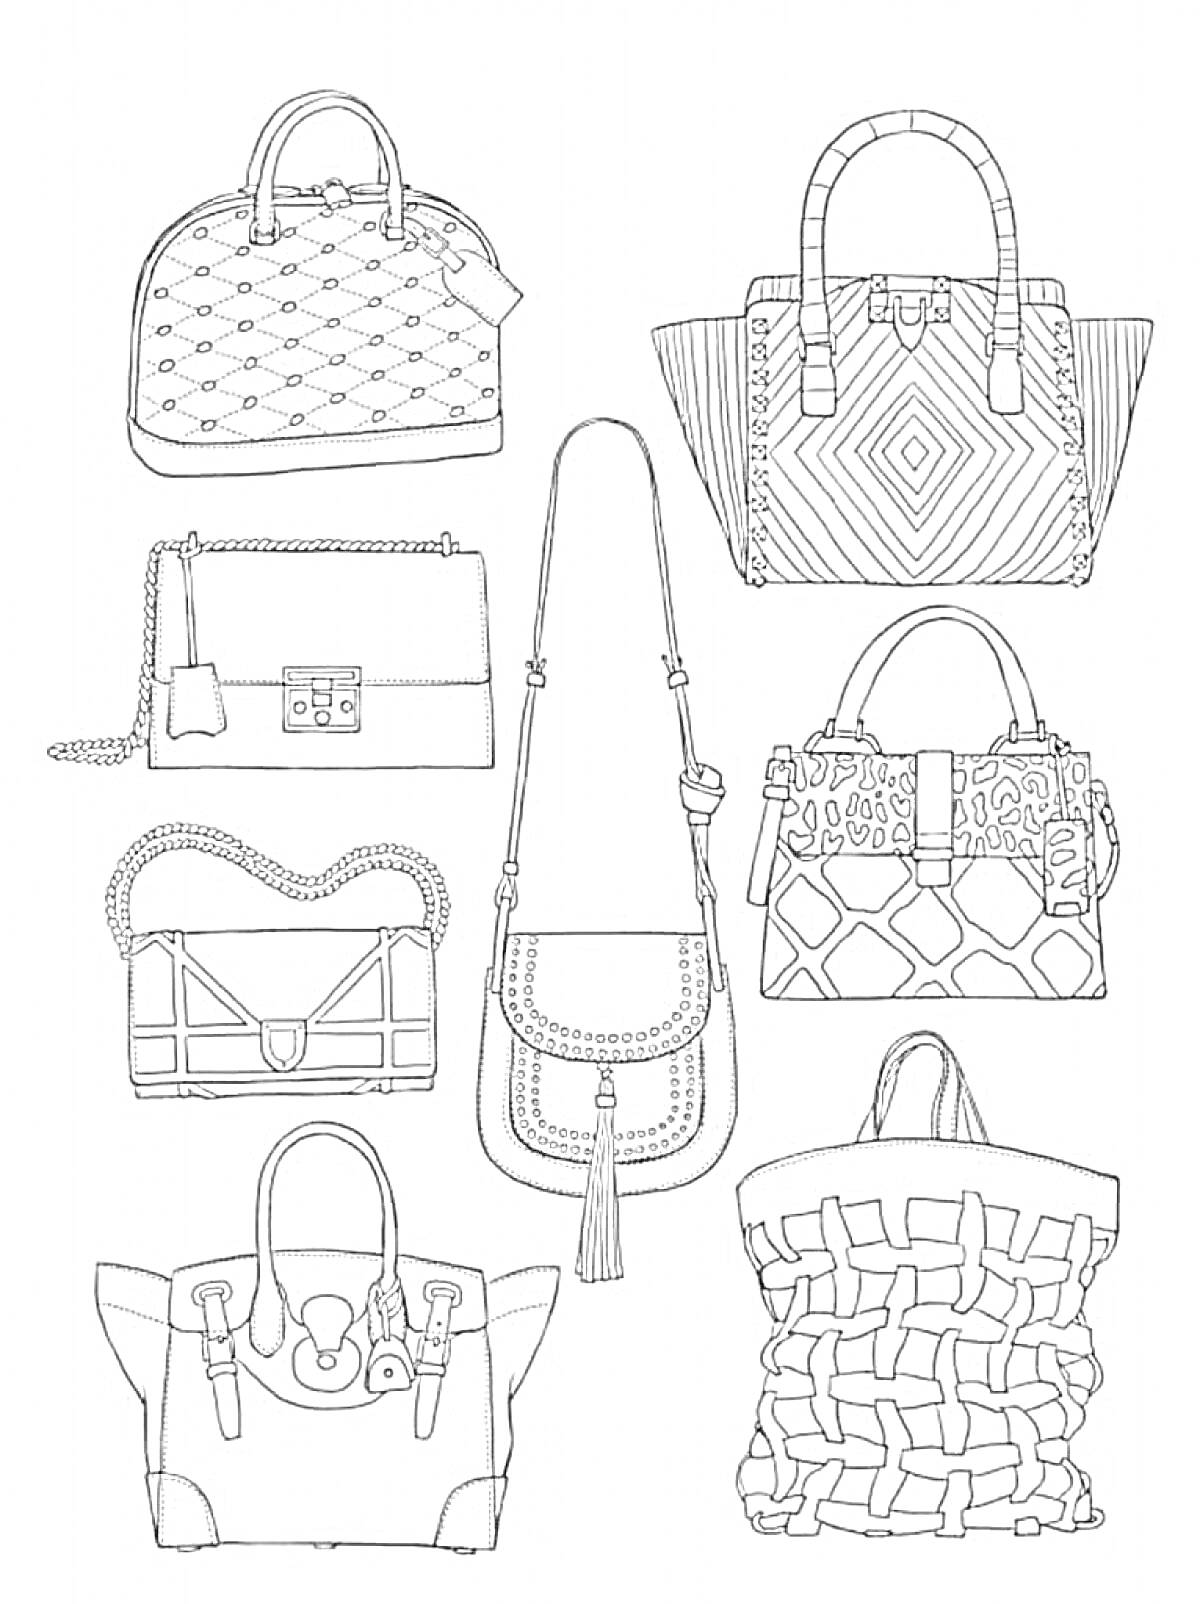 Раскраска с изображениями 8 различных сумочек: сумочка с диагональными линиями и мини-замочком, сумочка с ромбическим узором и ручками, сумочка с замком и плетеным ремешком, сумочка с закругленным верхом и ремешком через плечо, сумочка с крупным плетением